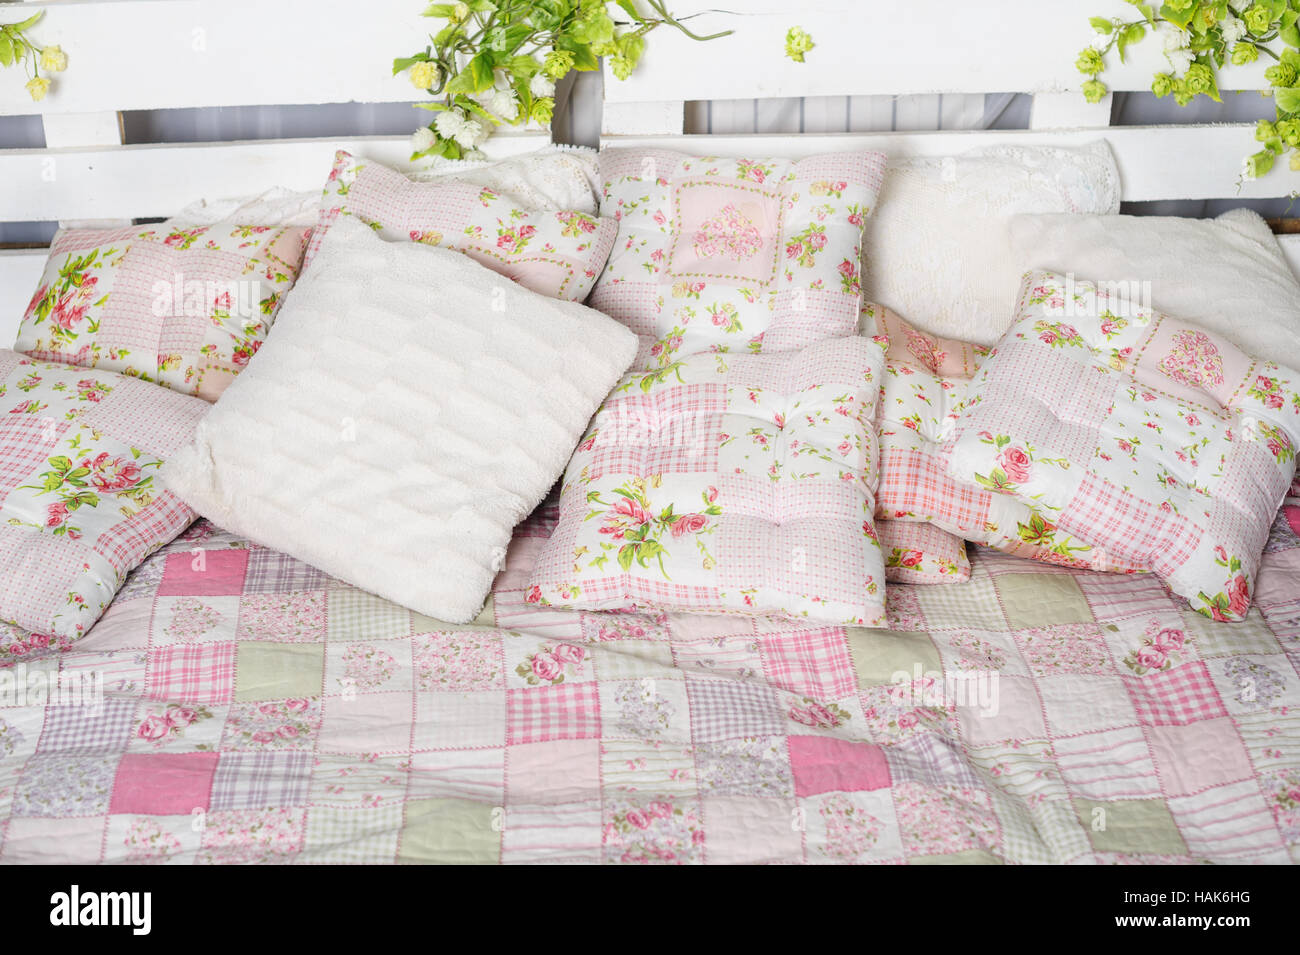 Cuscino e coperta del letto in stile rustico Foto Stock